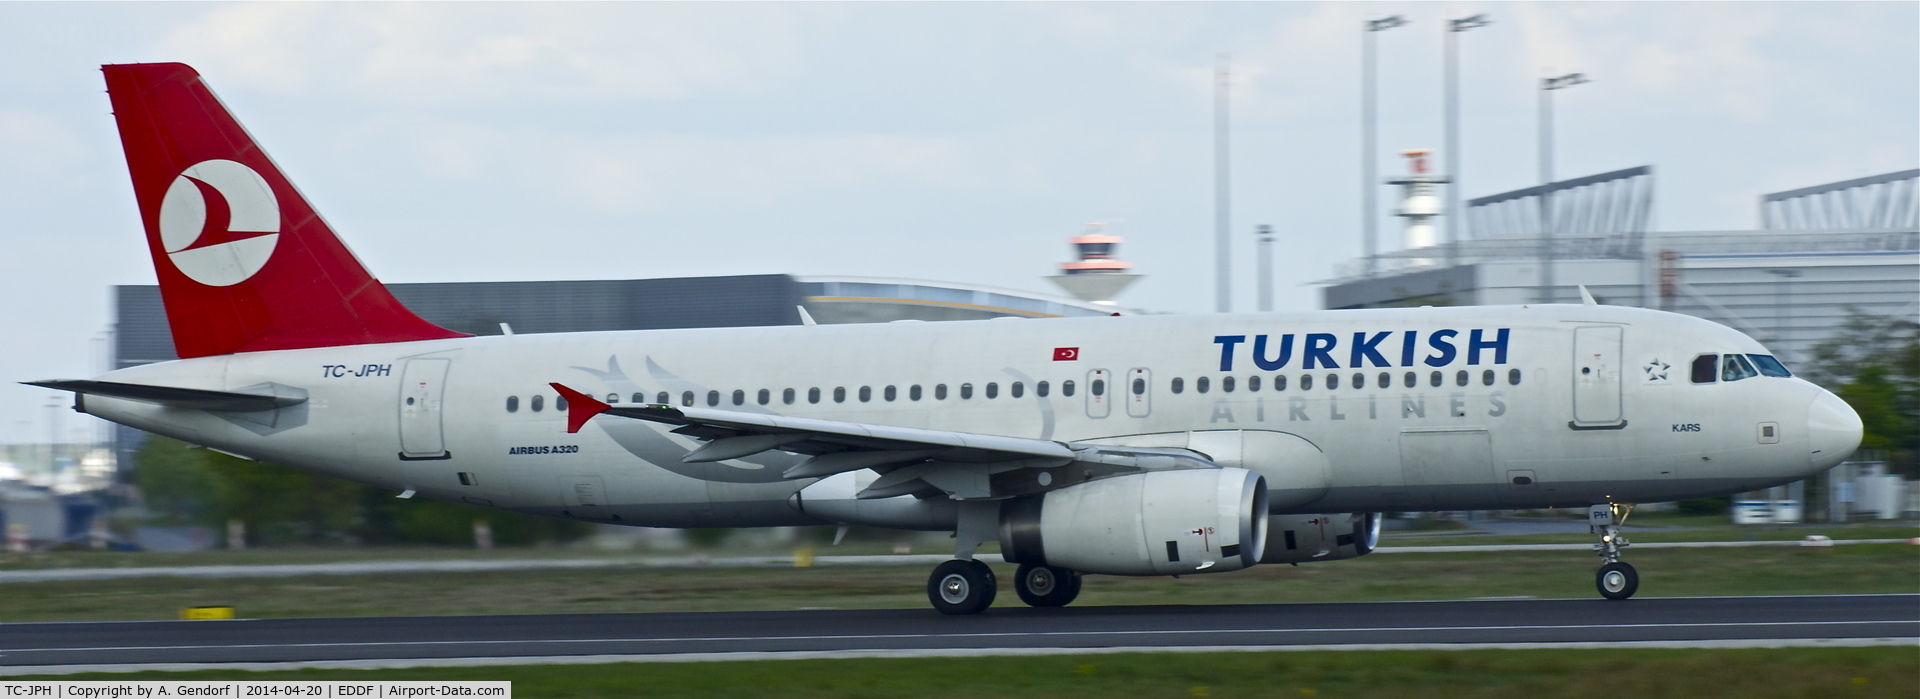 TC-JPH, 2007 Airbus A320-232 C/N 3185, Turkish Airlines, is here on RWY18 at Frankfurt Rhein/Main Int'l(EDDF)